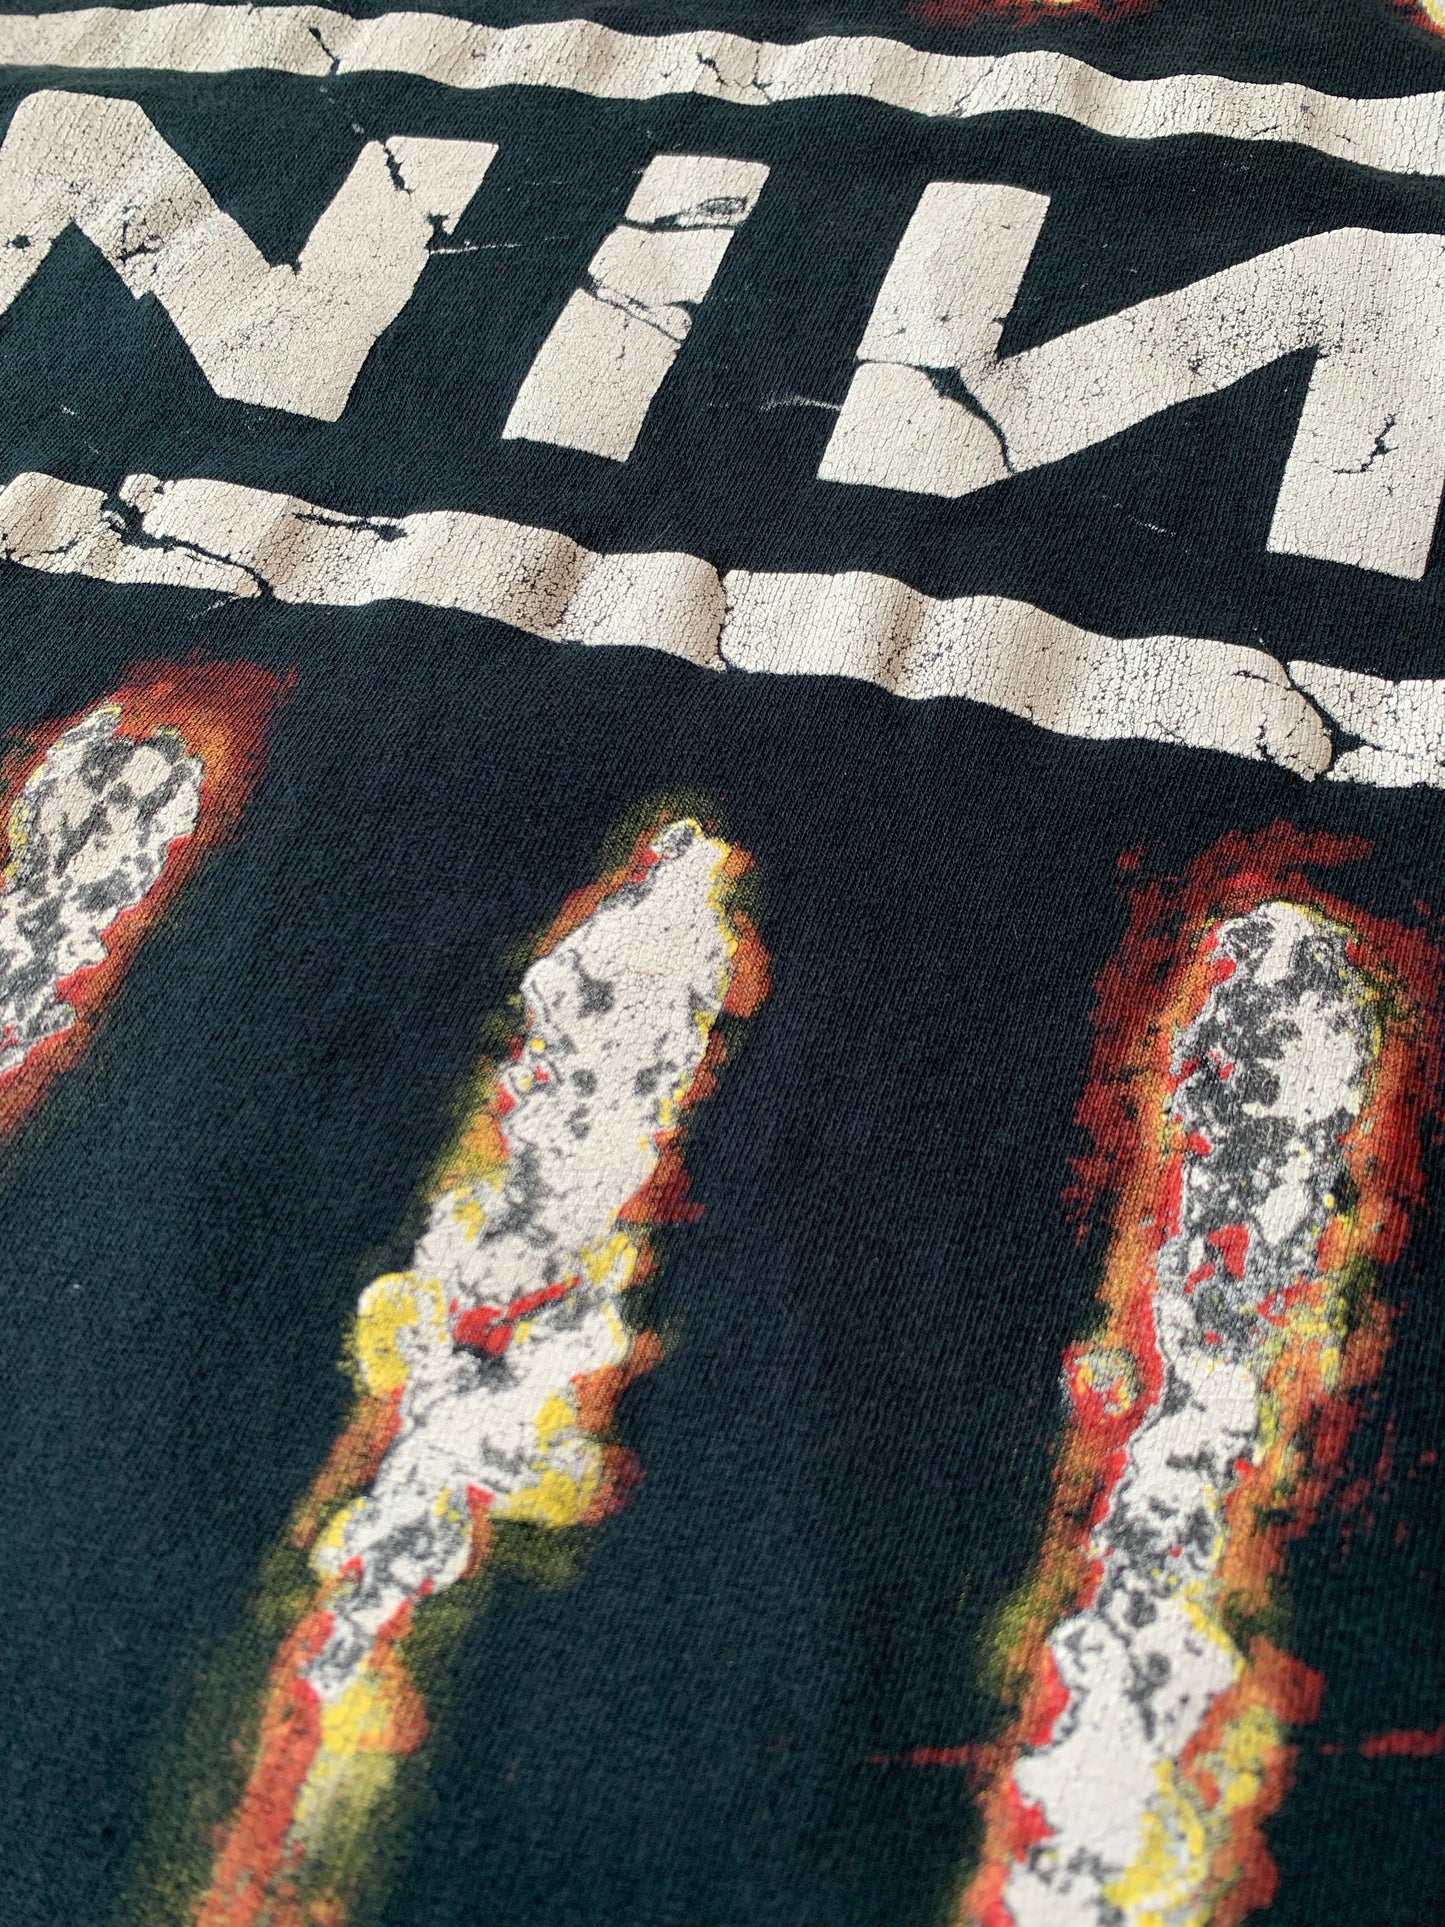 Vintage 1990’s Nine Inch Nails The Downward Spiral T-Shirt